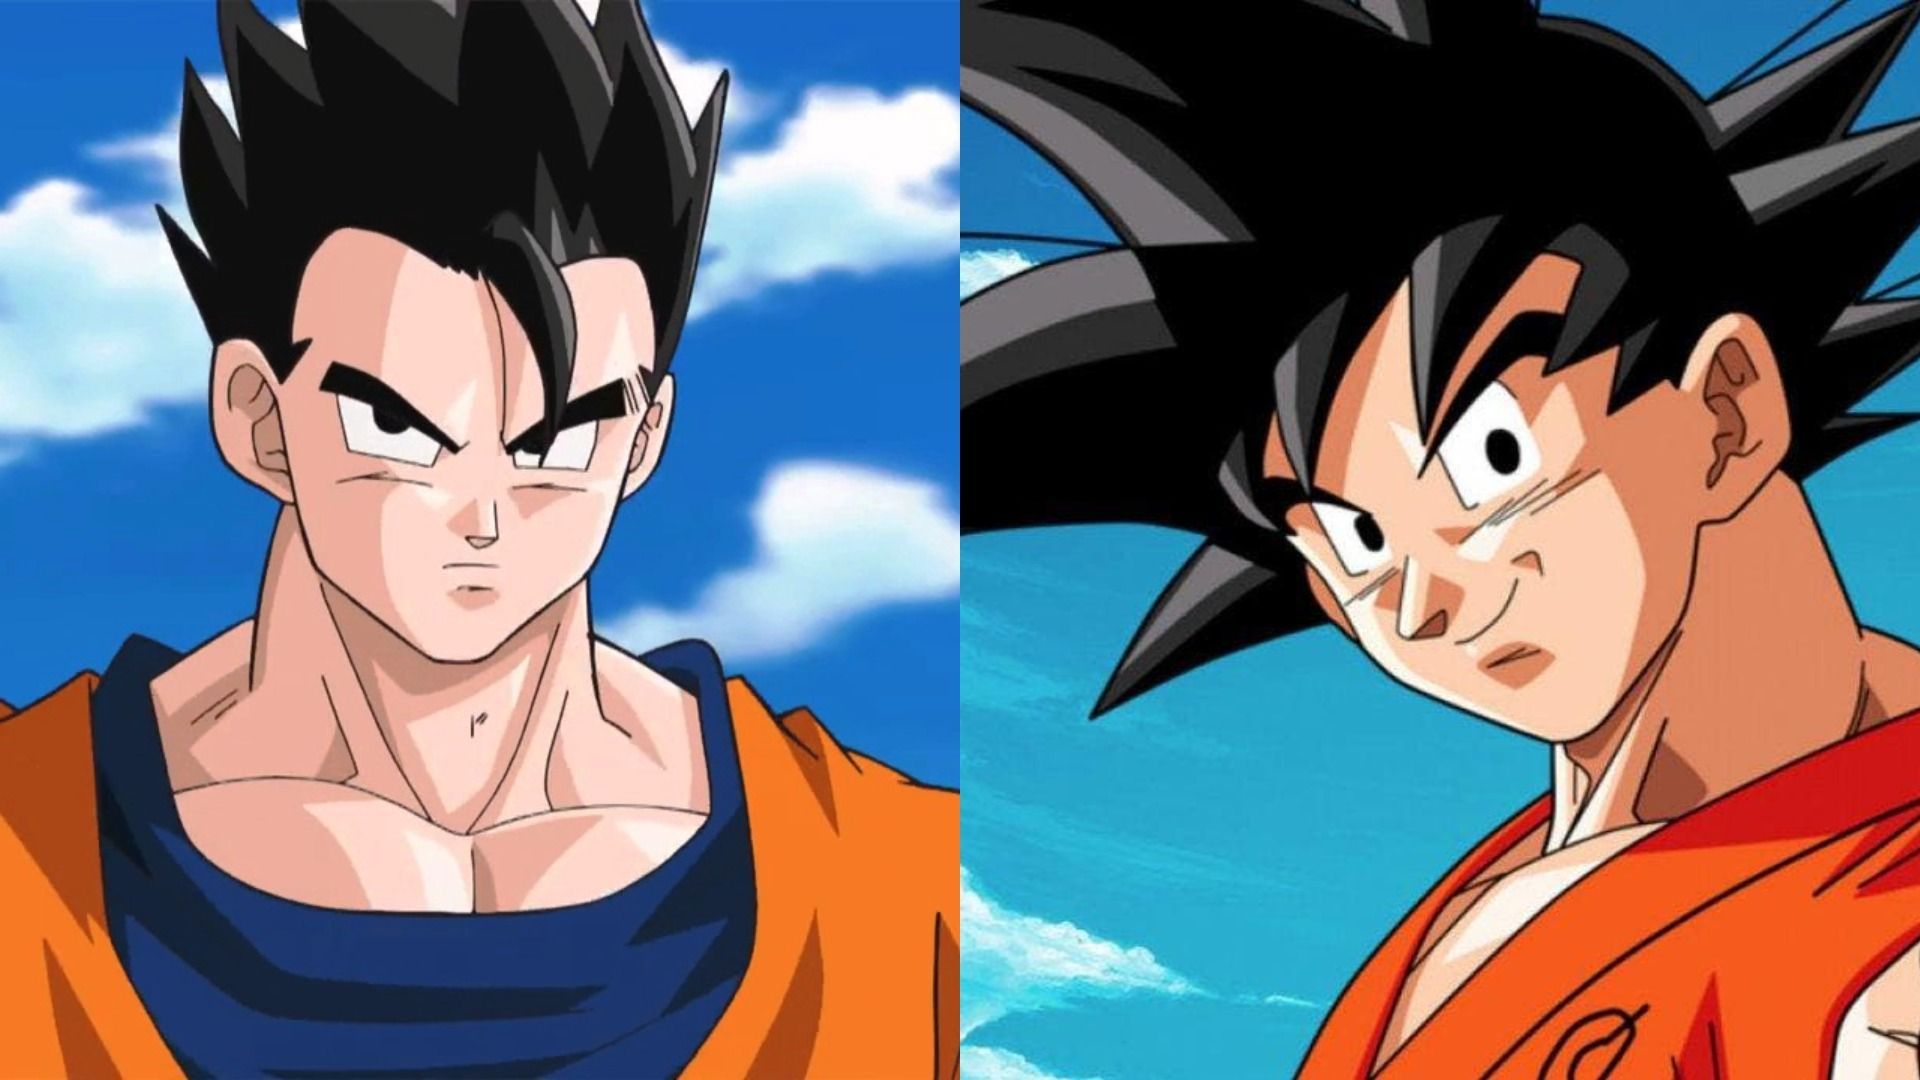 Dragon Ball: Esta teoría explica por qué Gohan no puede ser más fuerte que  Goku - Vandal Random